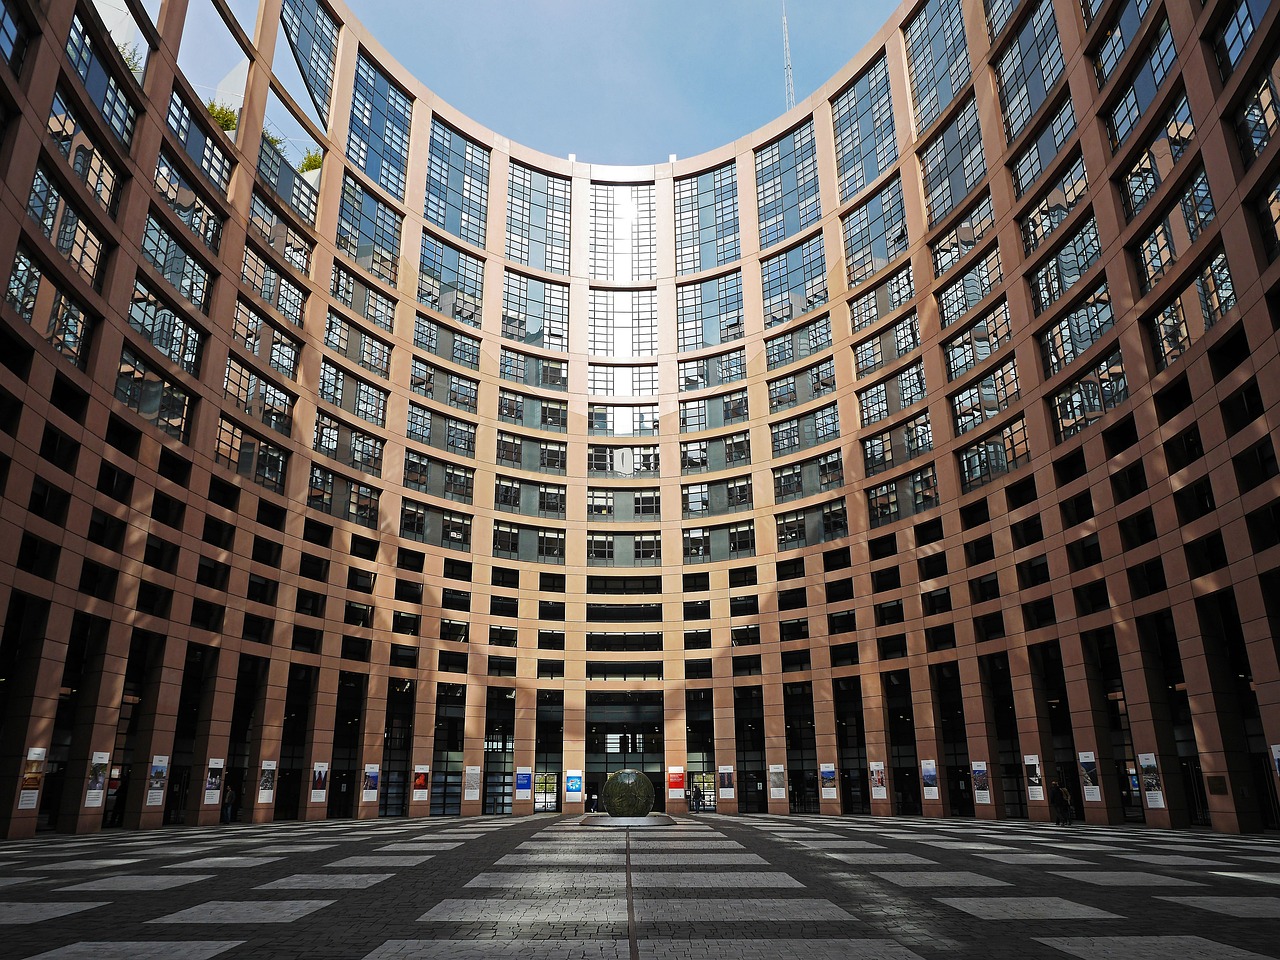 Immagine del Parlamento Europeo